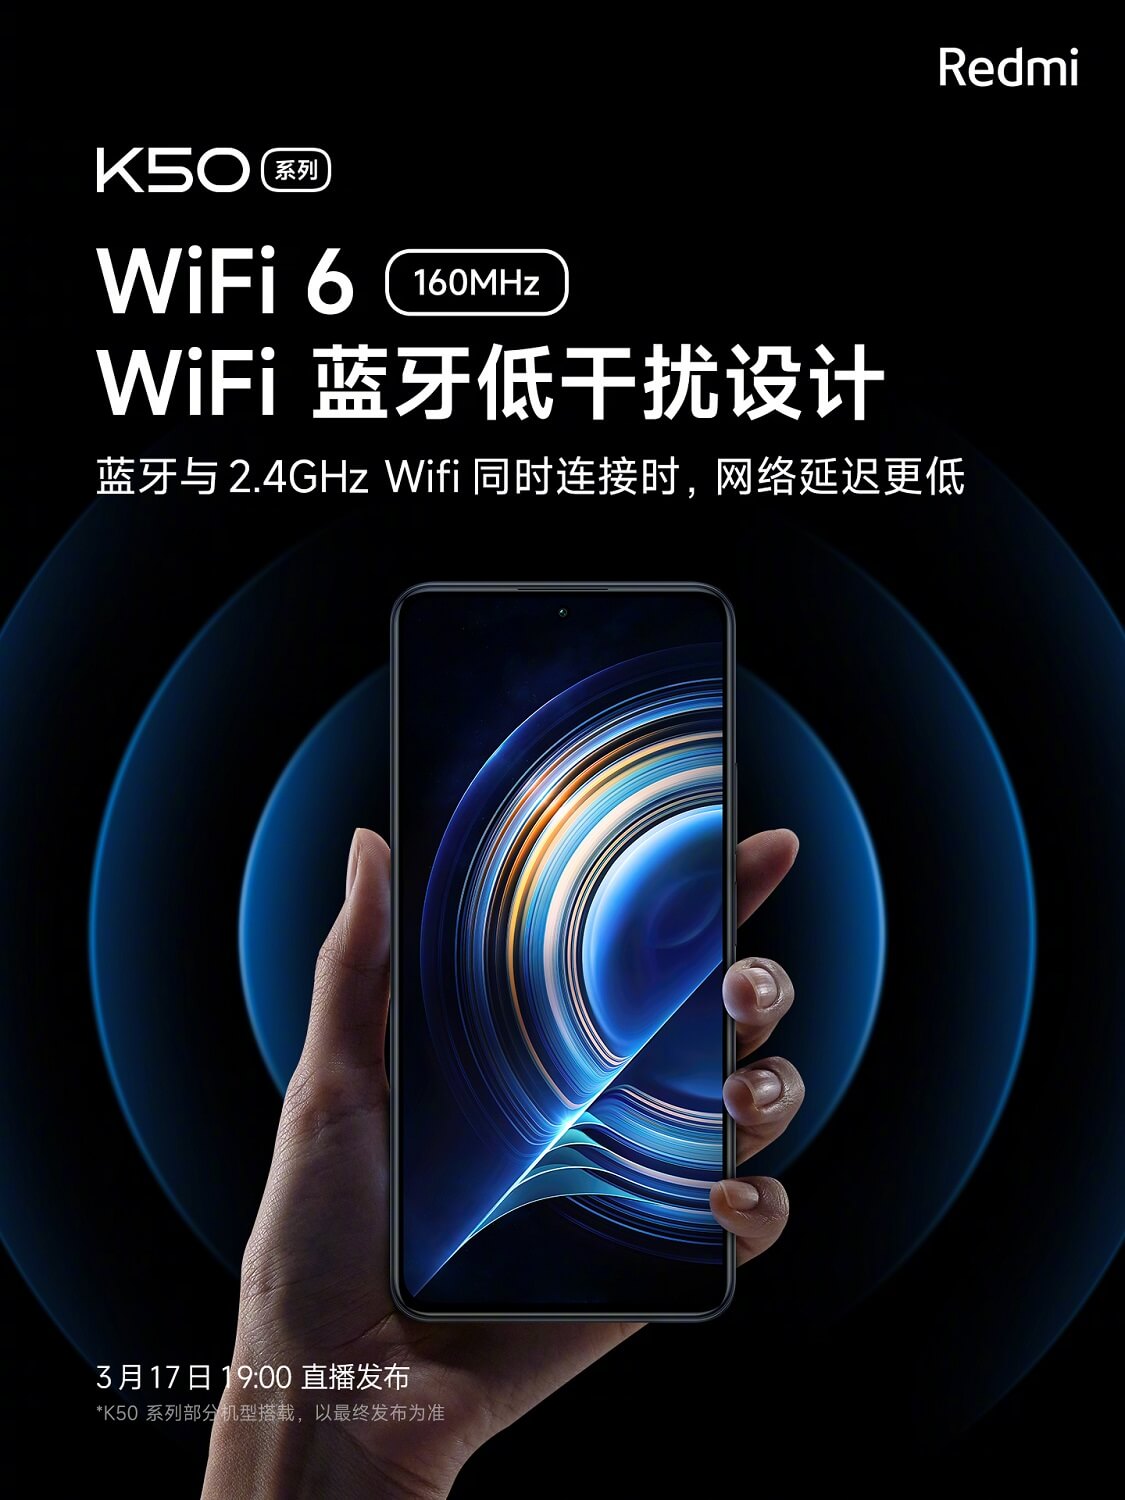 Redmi K50 series WiFi 6